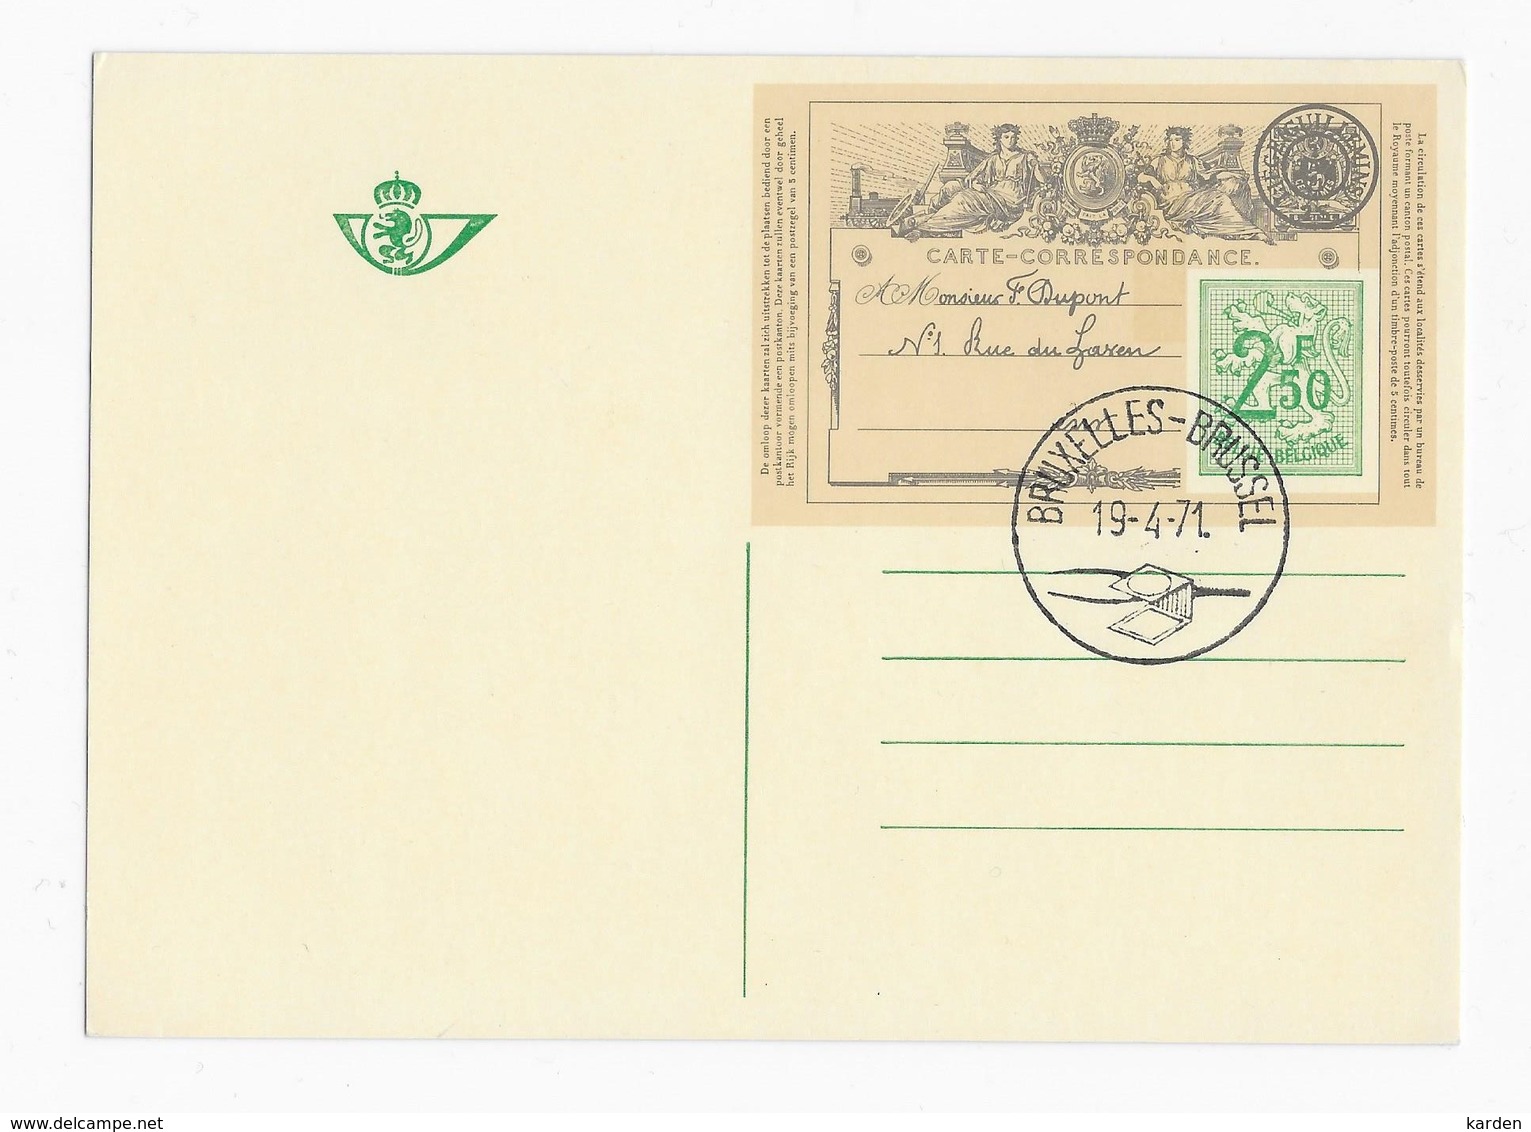 Speciale Geïllustreerde Briefkaart Met Eerste Afstempeling Uit Brussel - Cartes Postales Illustrées (1971-2014) [BK]